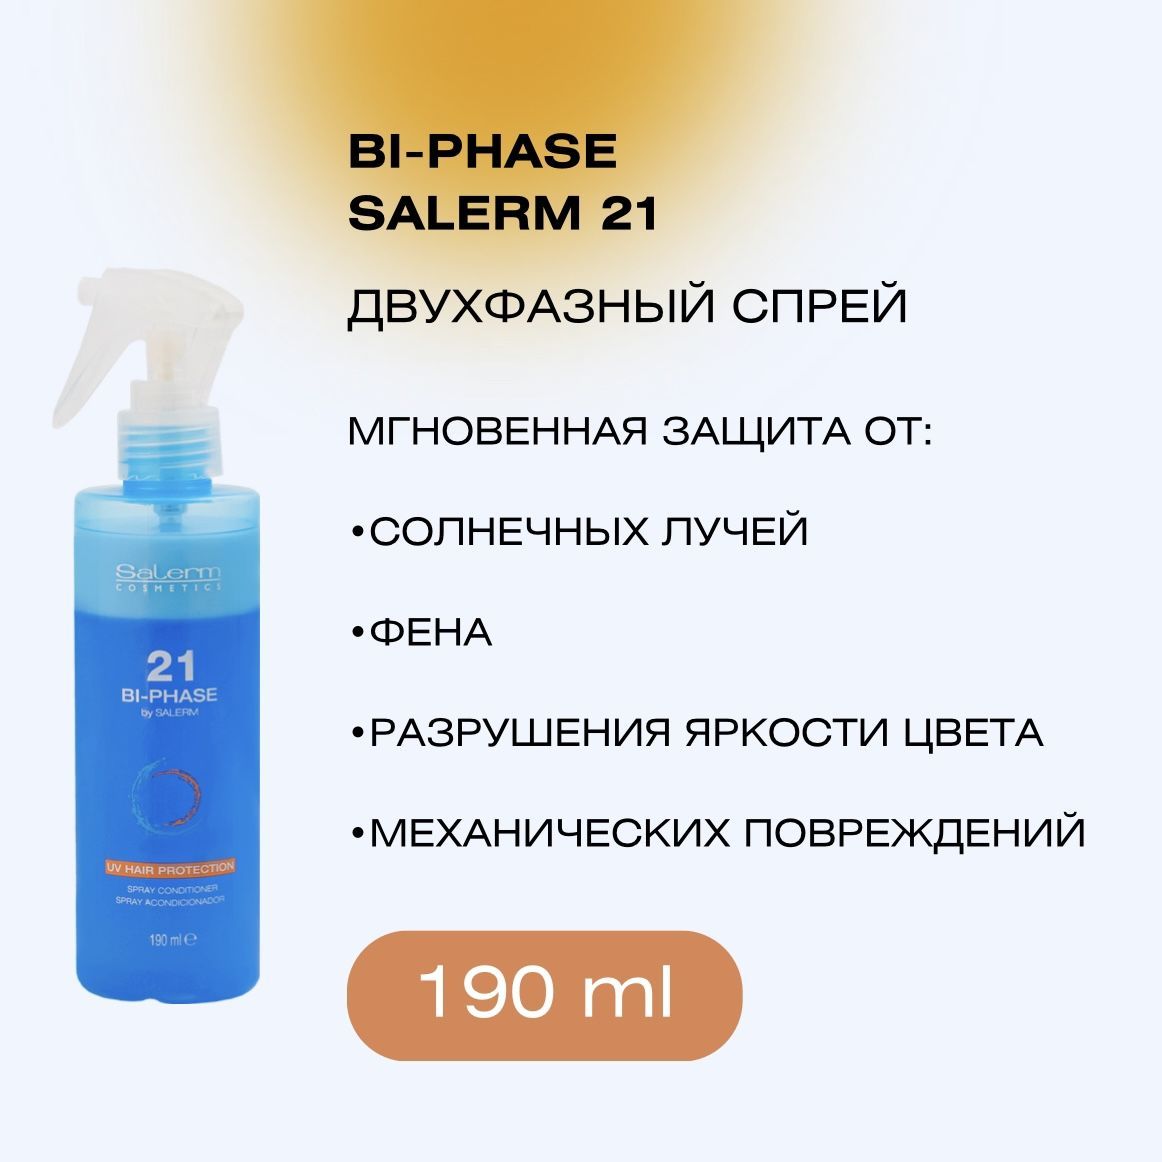 Salerm 21 Spray Acondicionador 190 ml